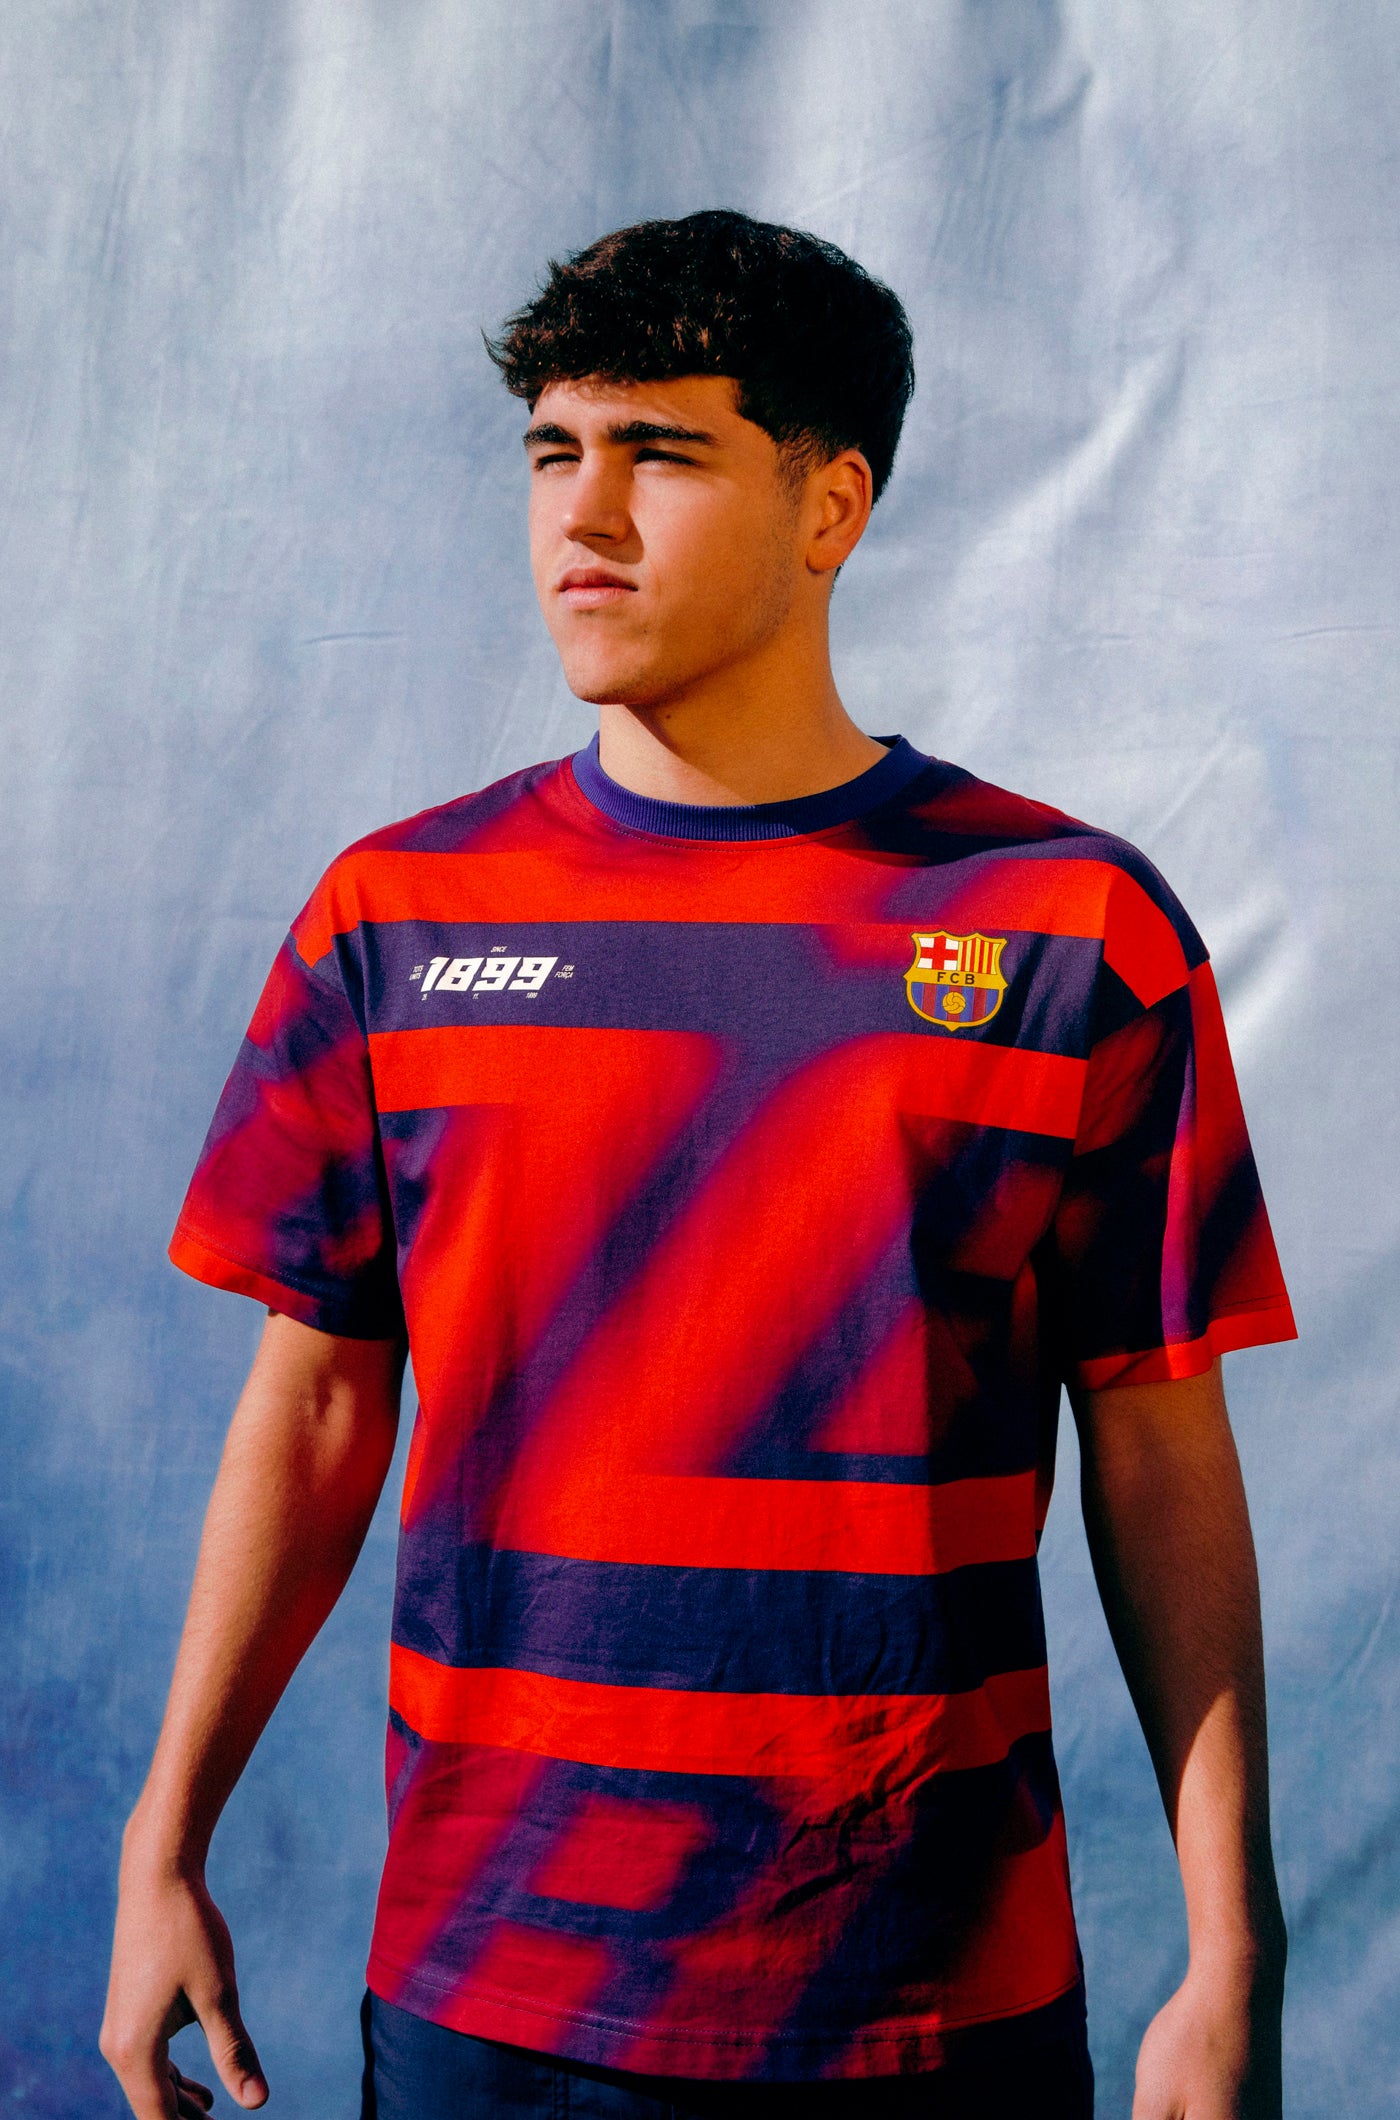 Camiseta manga corta con estampado Barça